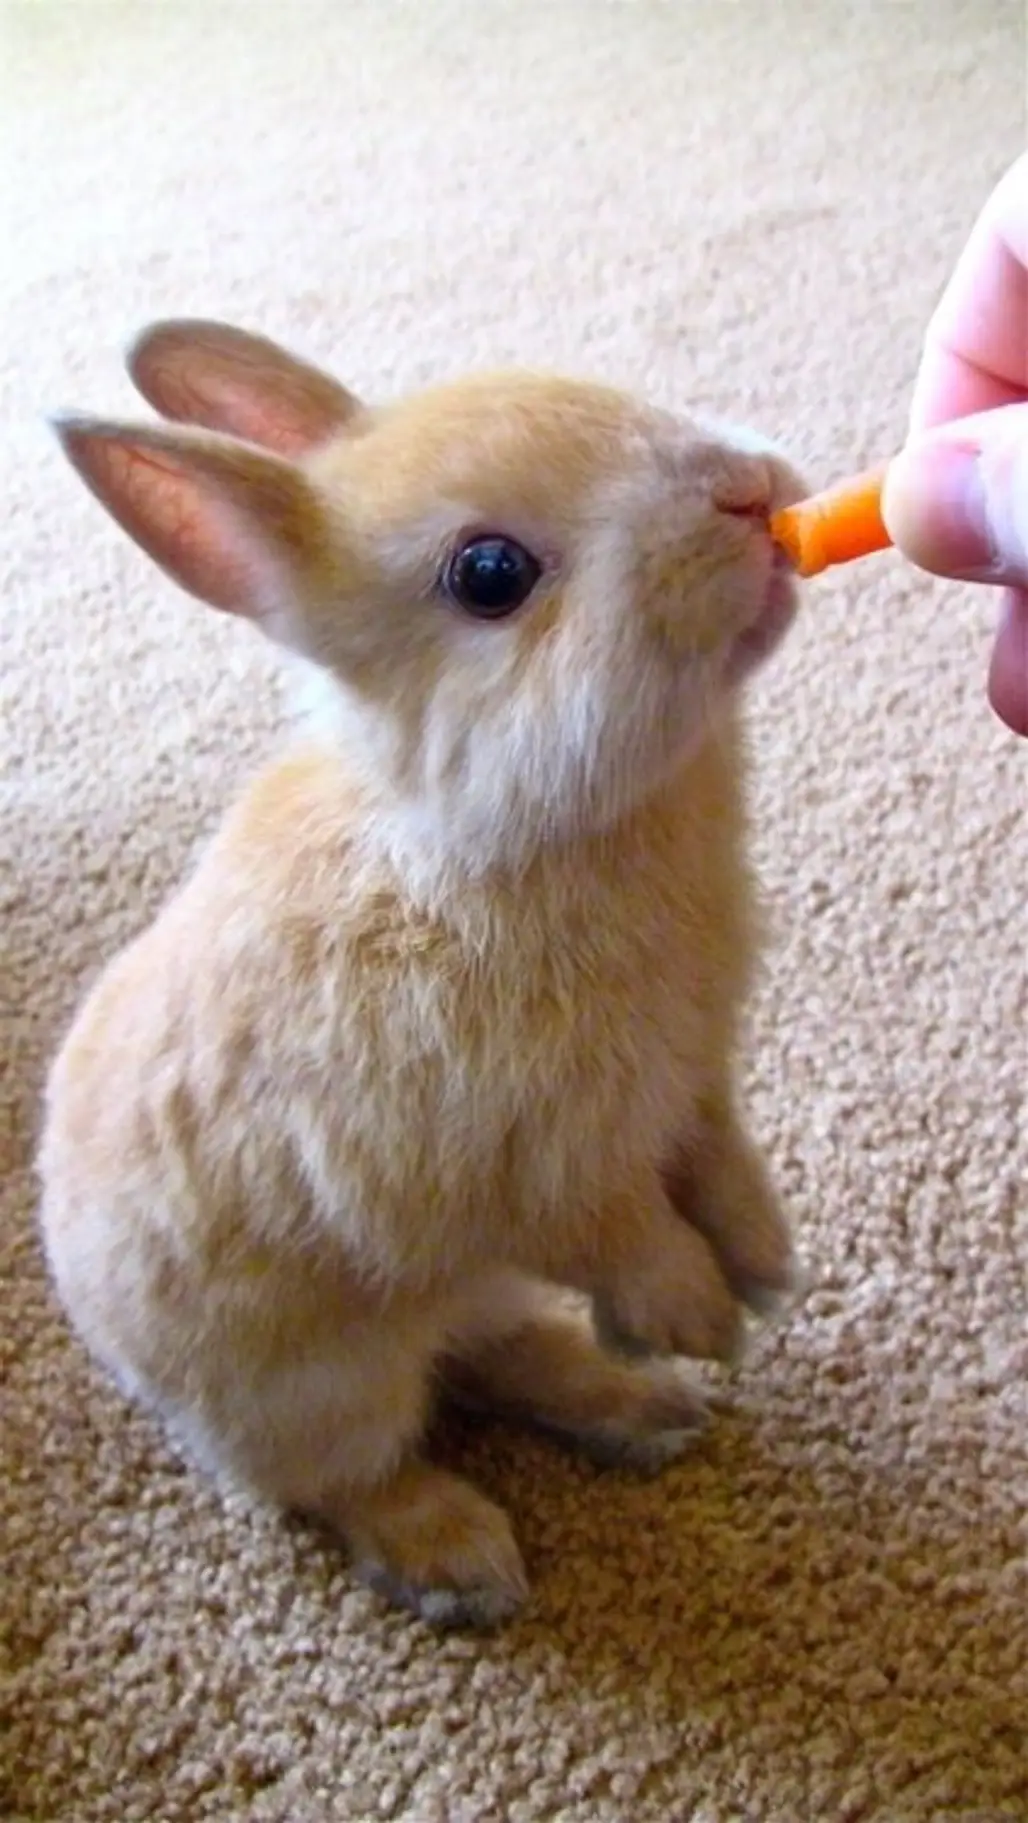 Carrot?